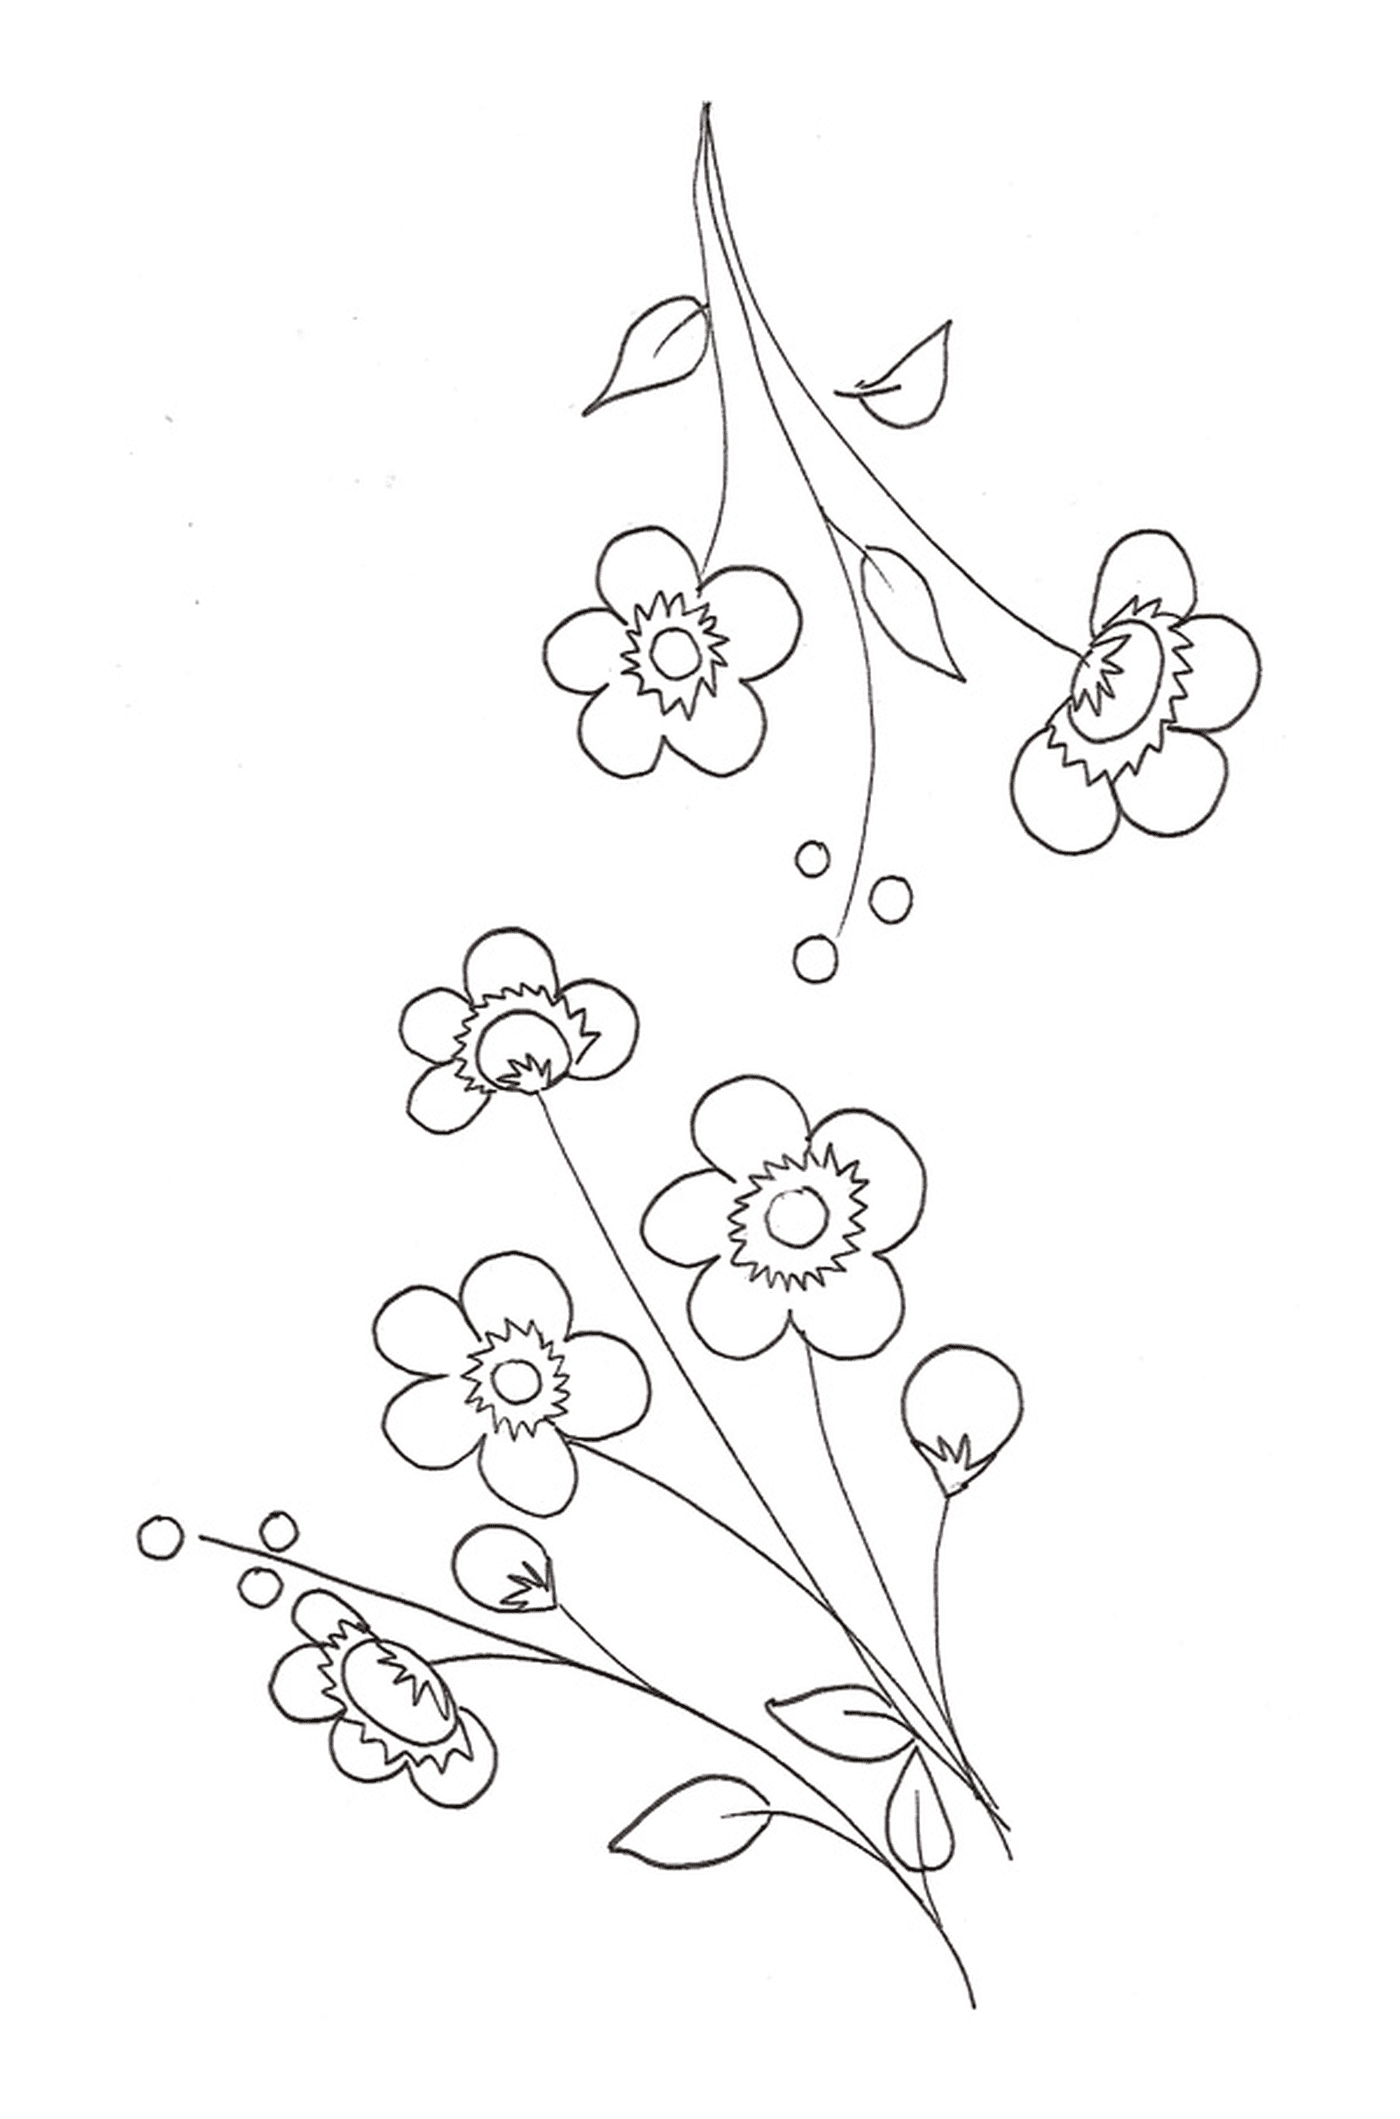   Une fleur de cerisier sur une ligne avec un groupe de fleurs 